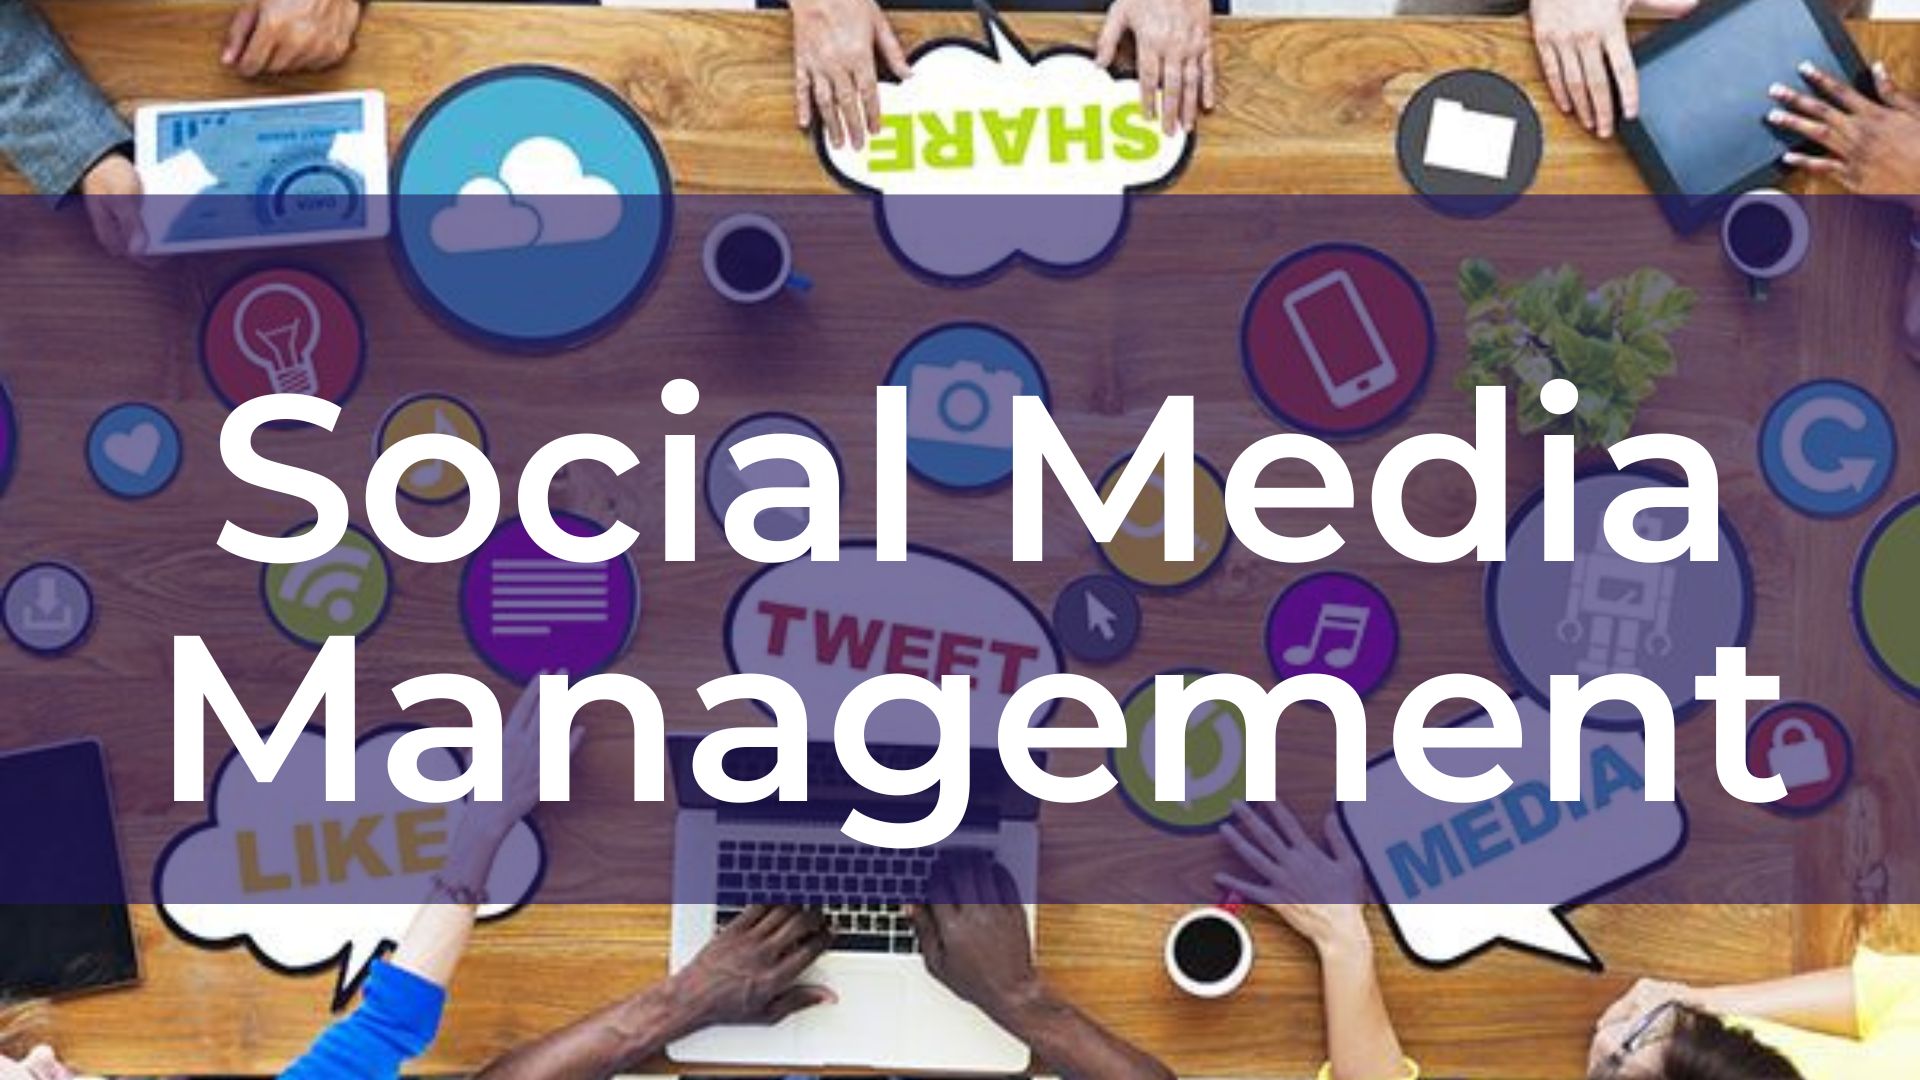 Social Media Management - Truyền thông mạng xã hội